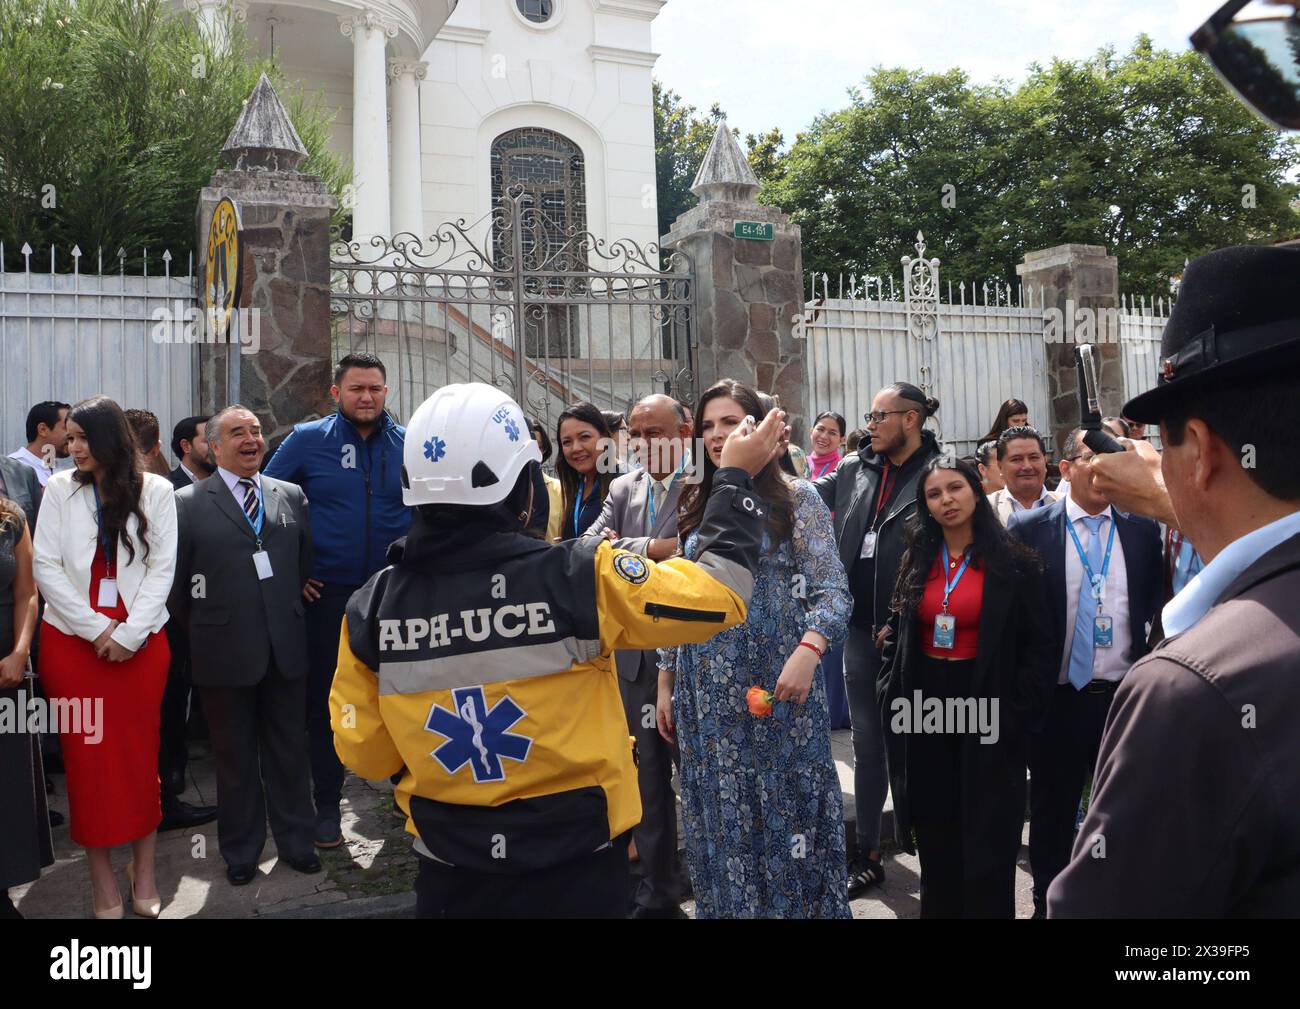 ASAMBLEA-SIMULACRO-ATENTADOS Quito, jueves 25 de abril del 2024 Similacro de atentados terroristas en contra de funcionarios y Asambleistas,en la Asamblea Nacional, Edificio del Palacio Legislativo y sus alrededores. Fotos:Rolando Enriquez/API Quito Pichincha Ecuador POL-ASAMBLEA-SIMULACRO-ATENTADOS-78ccaf08691666d672ae03bef09d9edc *** ASAMBLEA SIMULACRO SIMULACRO ATENTADOS Quito, Thursday, April 25, 2024 Simulation of terrorist attacks against officials and Assembly Members, in the National Assembly, Legislative Palace Building and its surroundings Photos Rolando Enriquez API Quito Pichincha Stock Photo